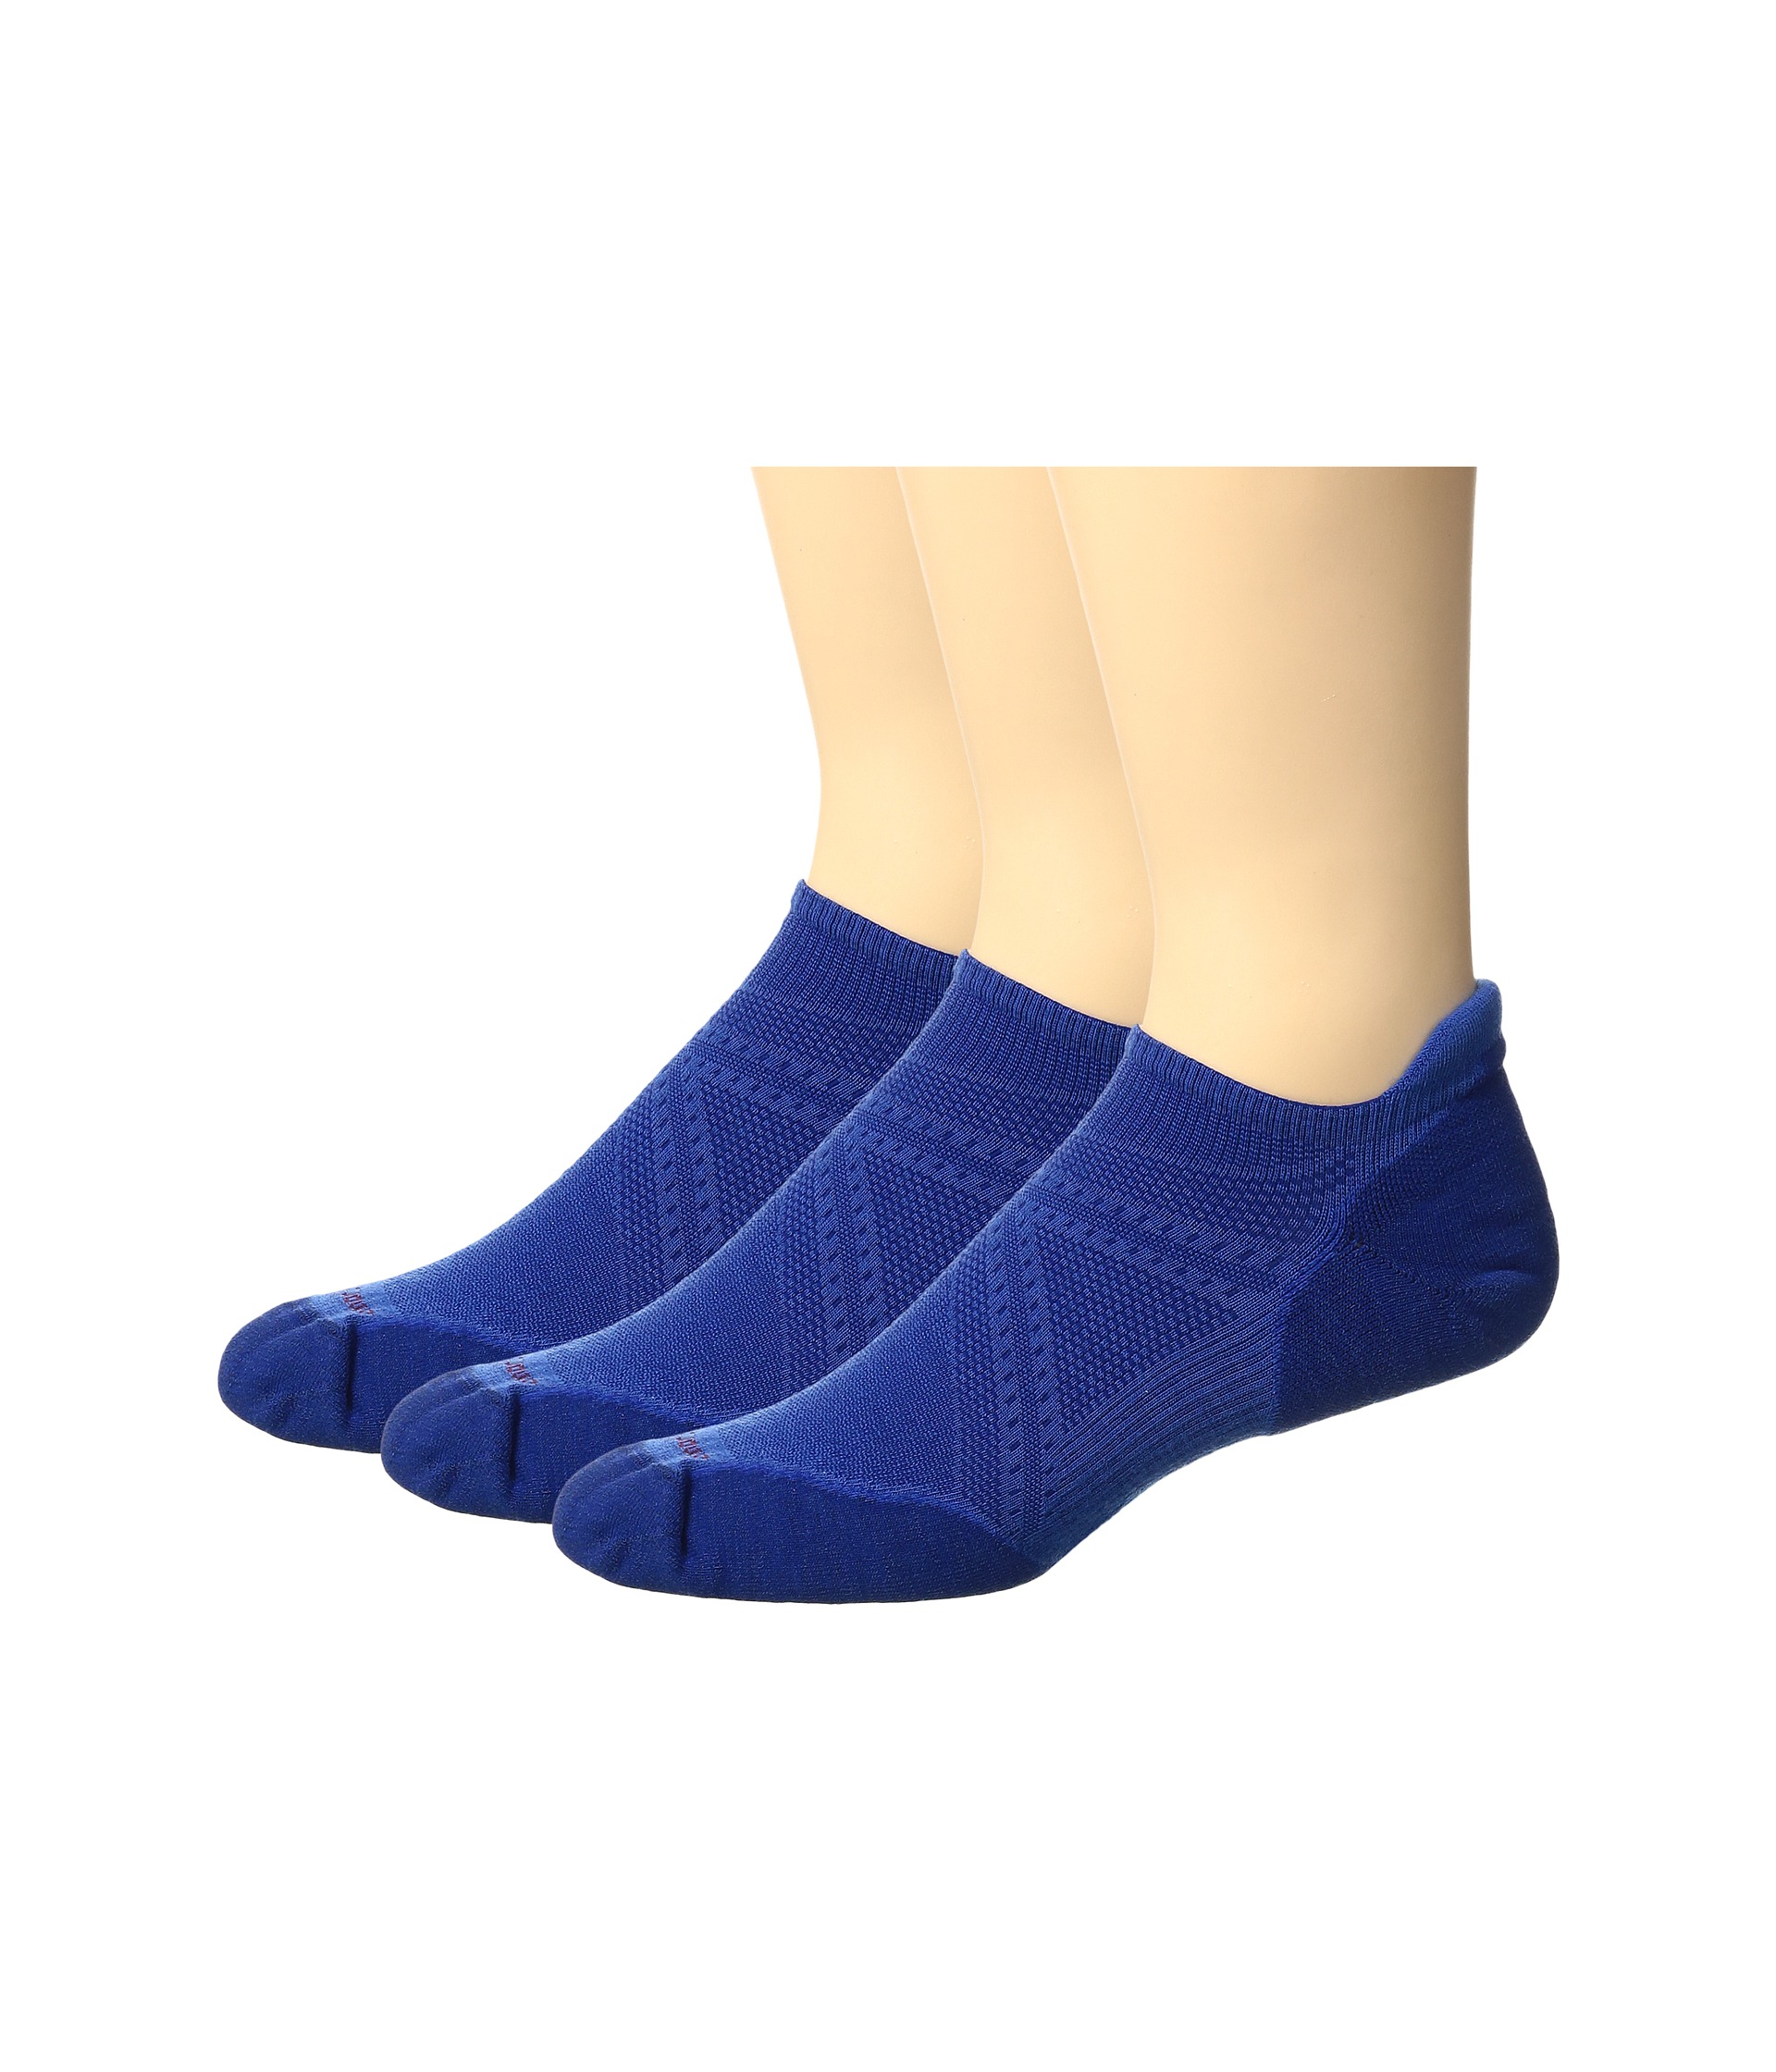 Smartwool-Mens Clothing-Socks Sale Outlet UK | Sale At Big Discount ...